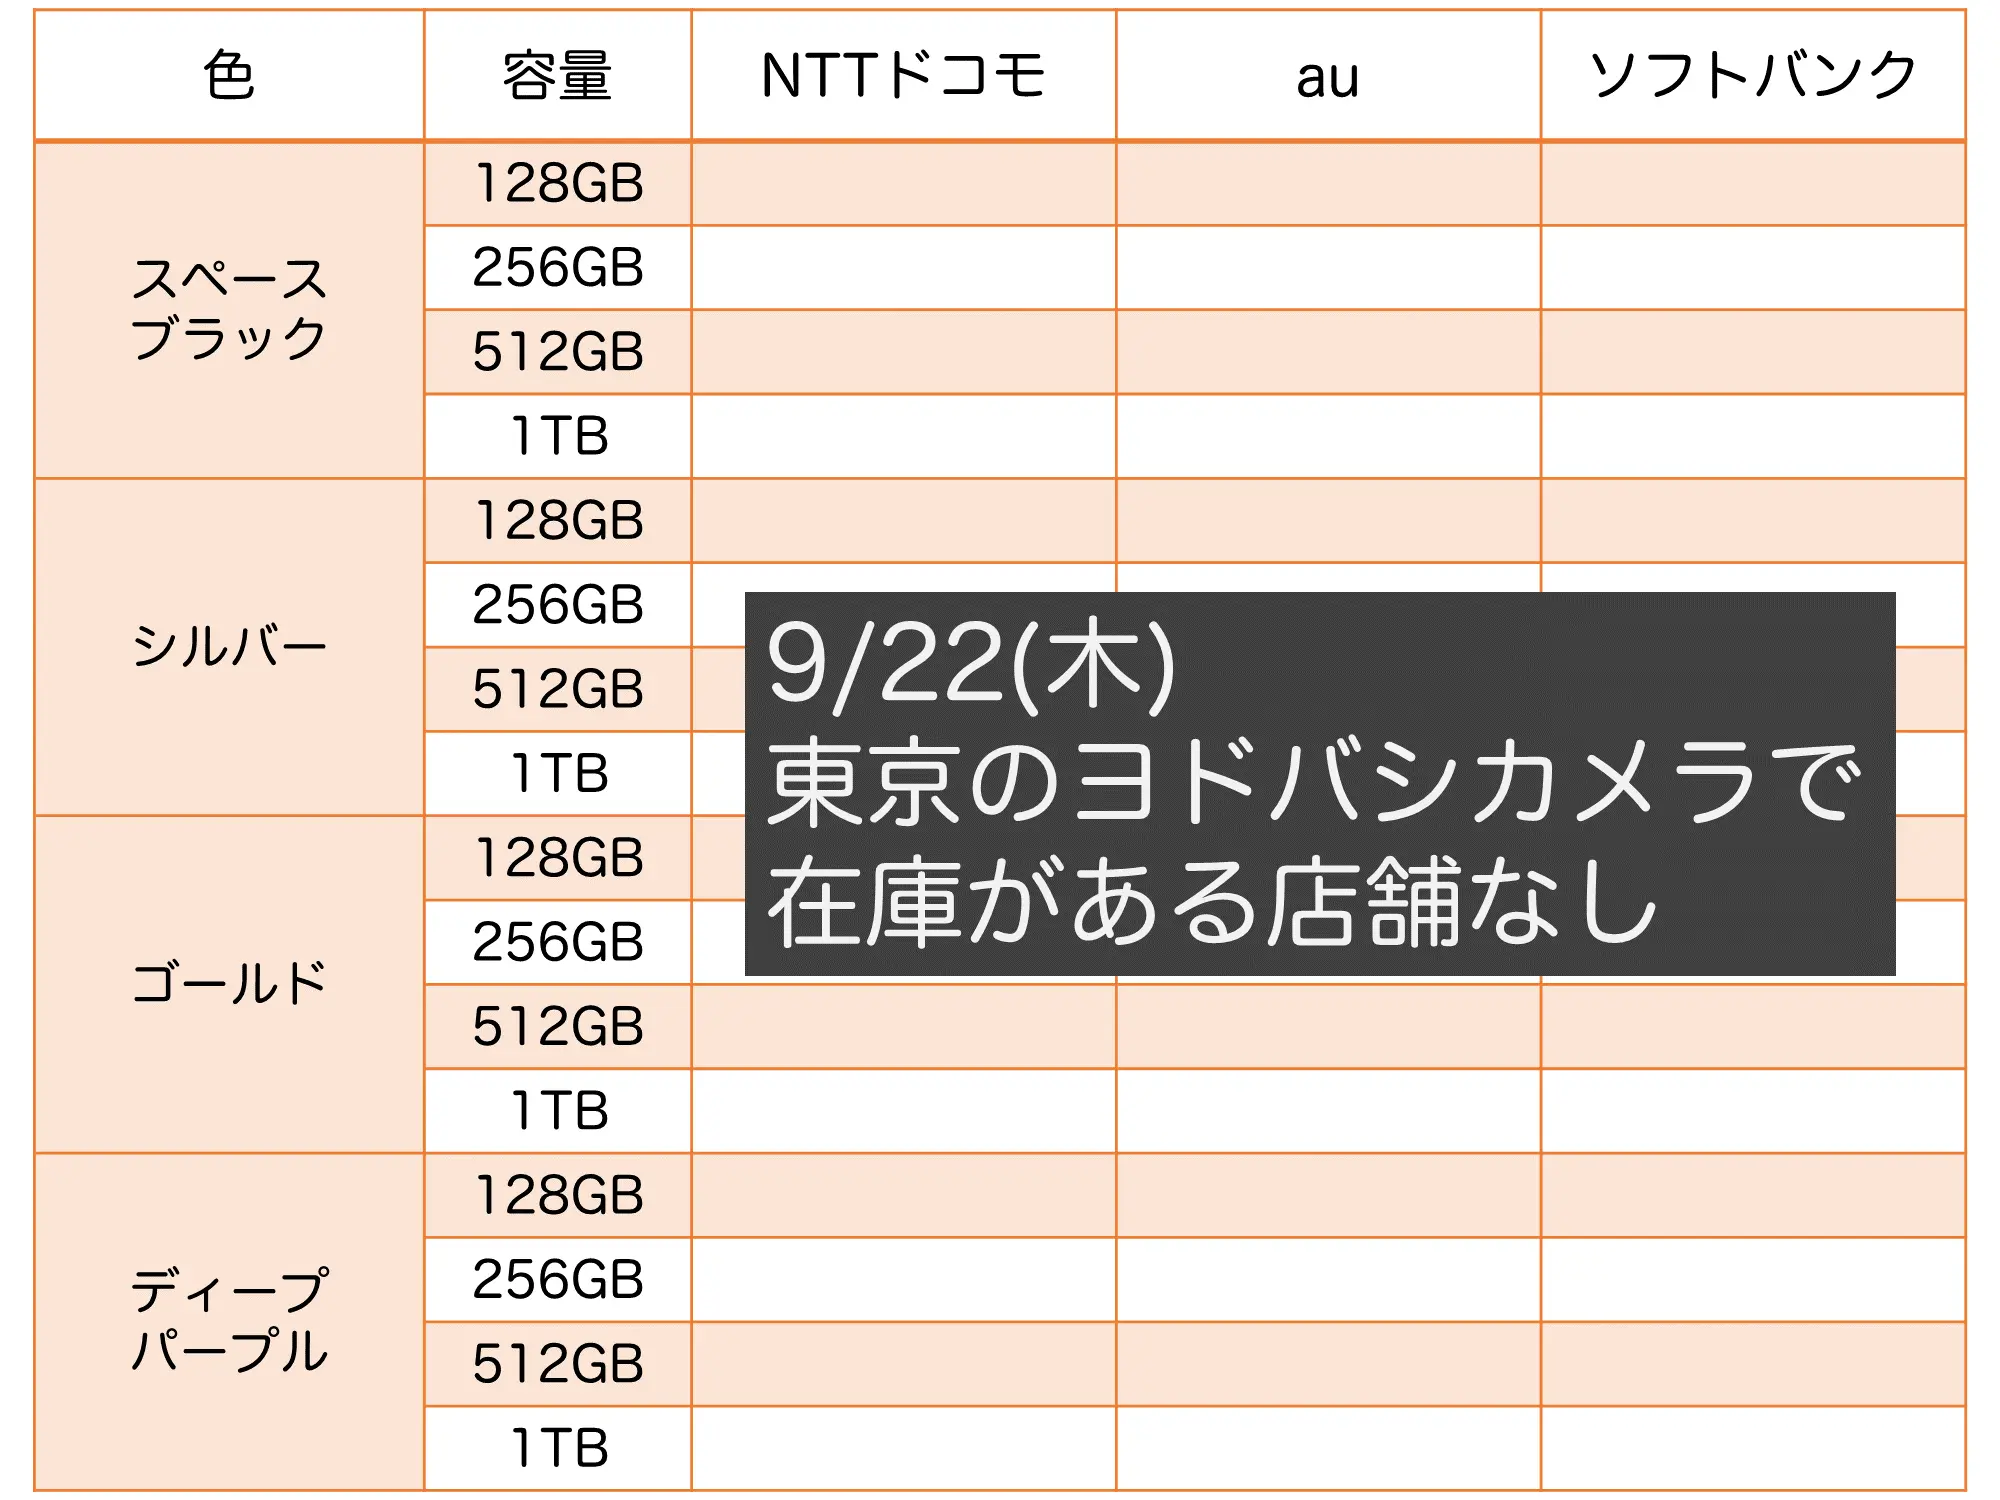 9/22(木)、東京のヨドバシカメラでのiPhone14 Pro Max在庫状況